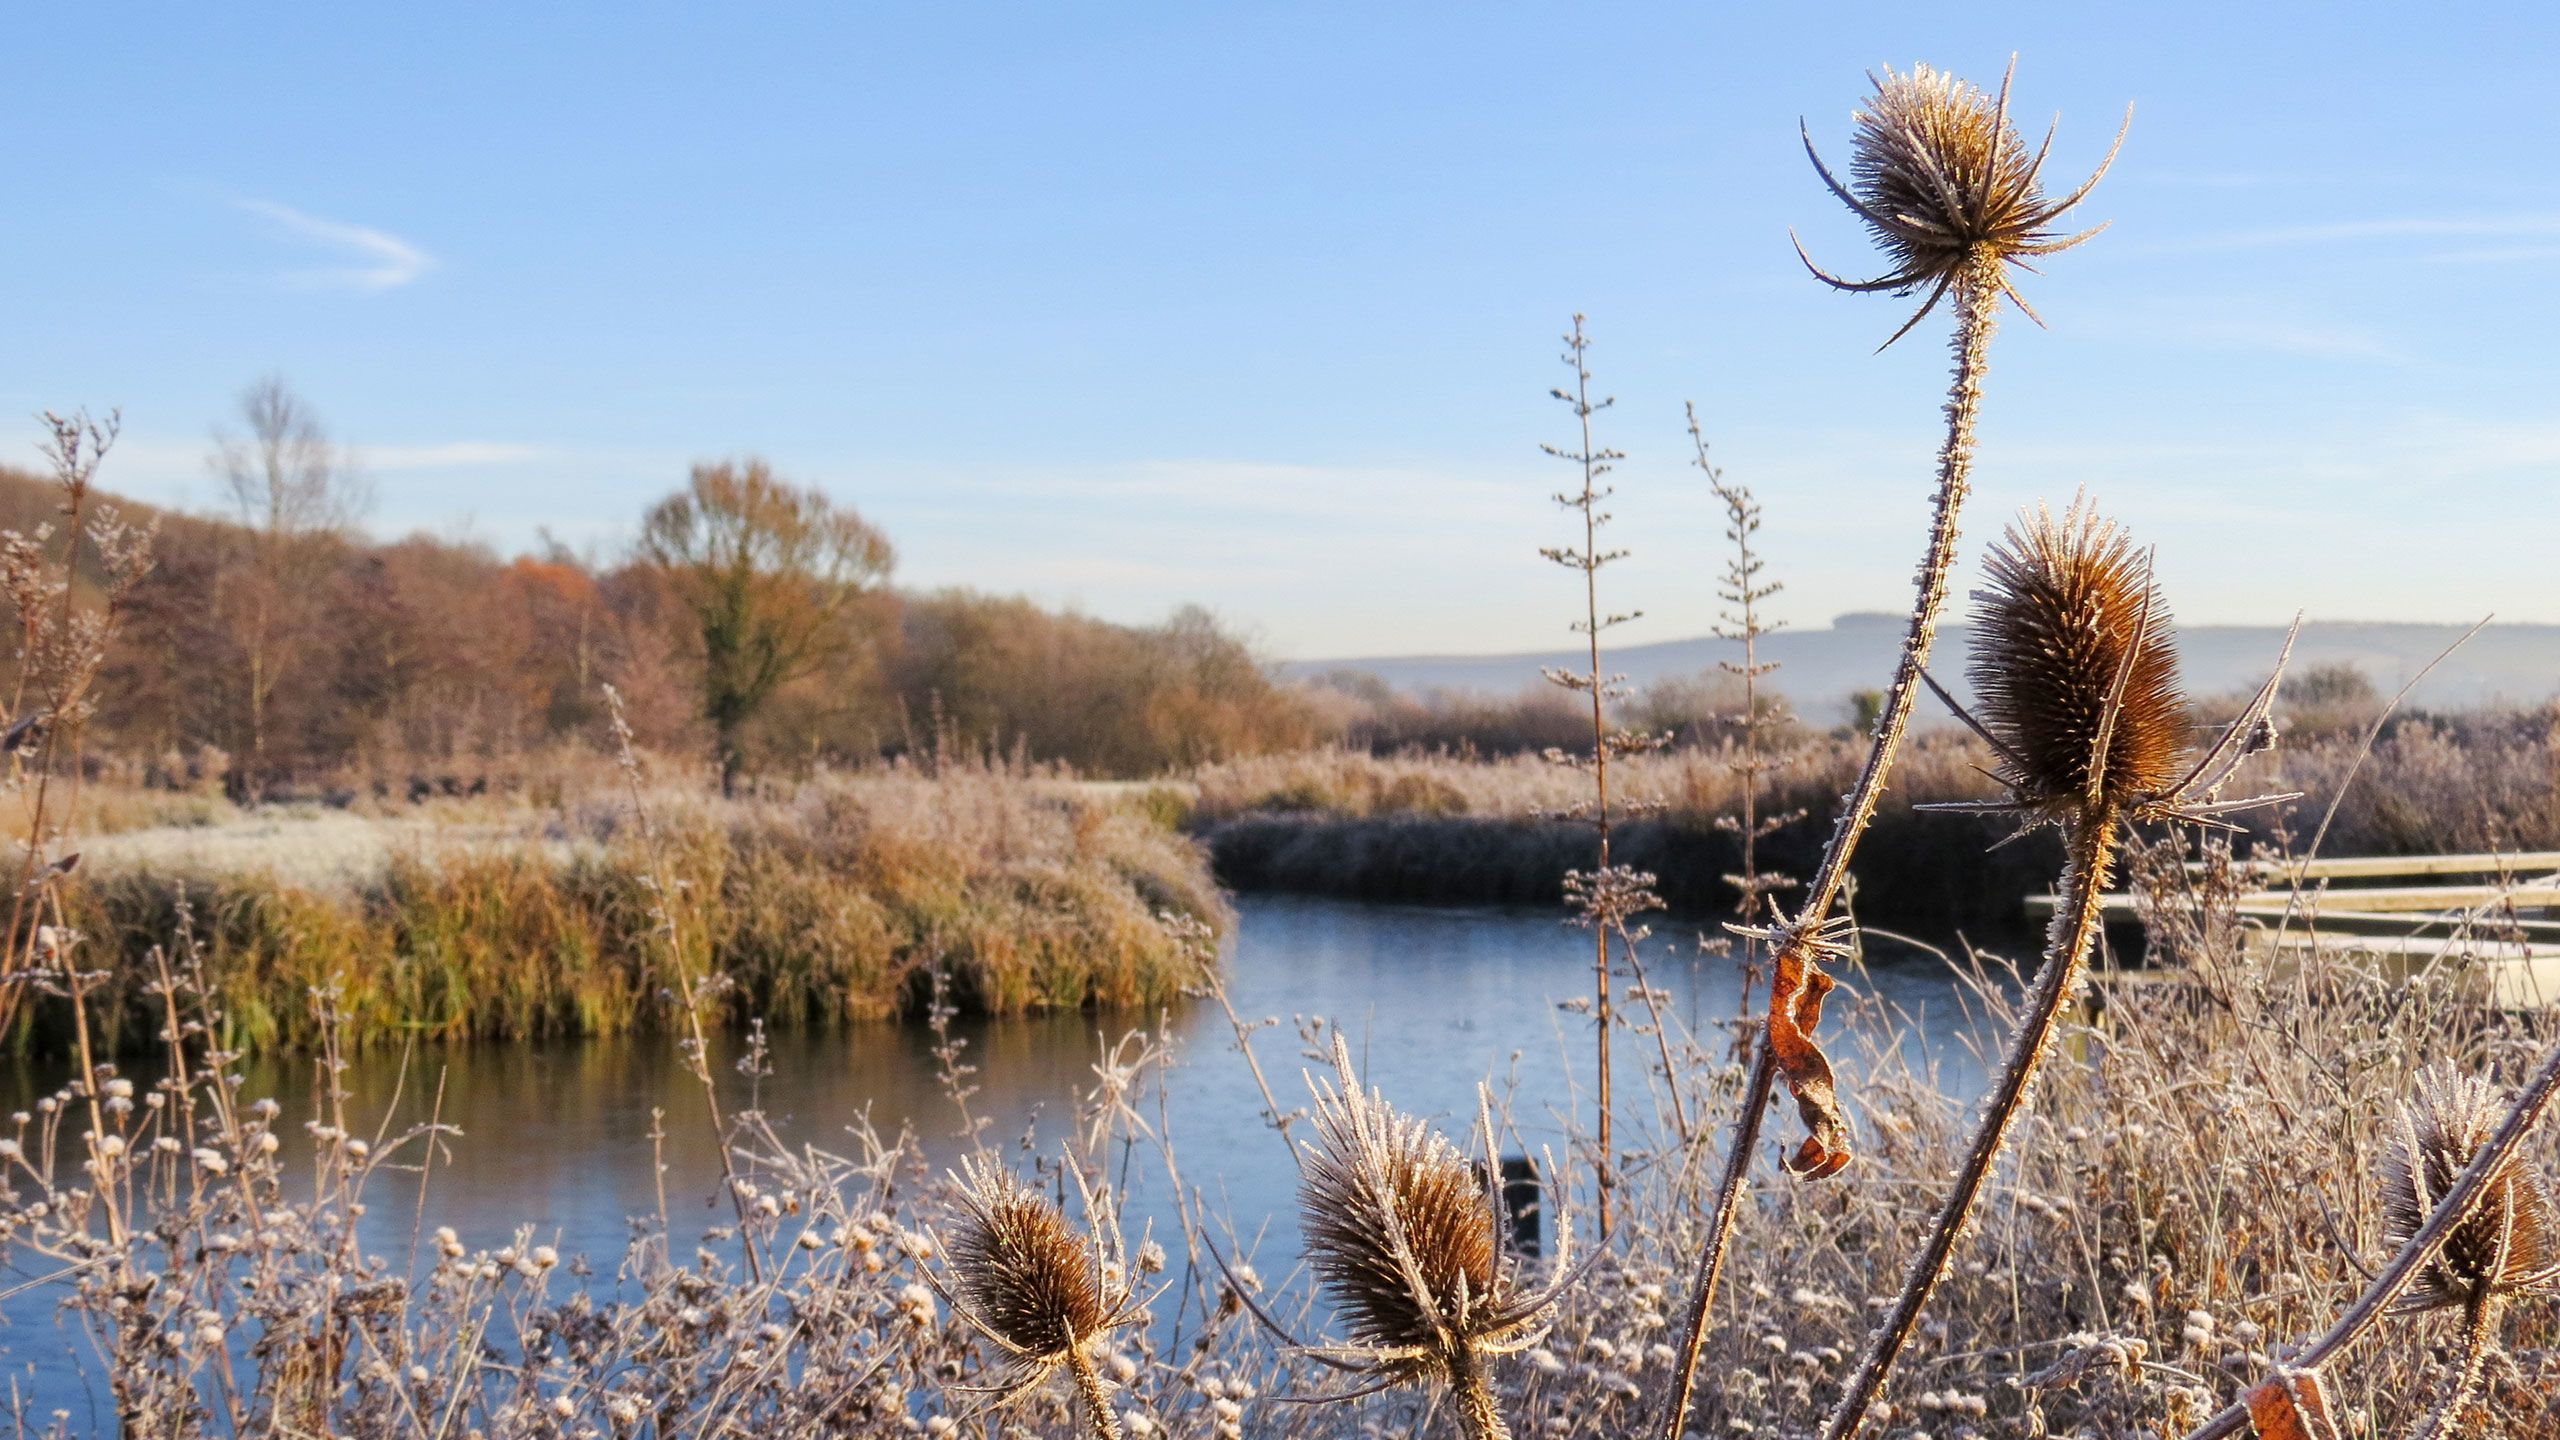 A wetland in winter